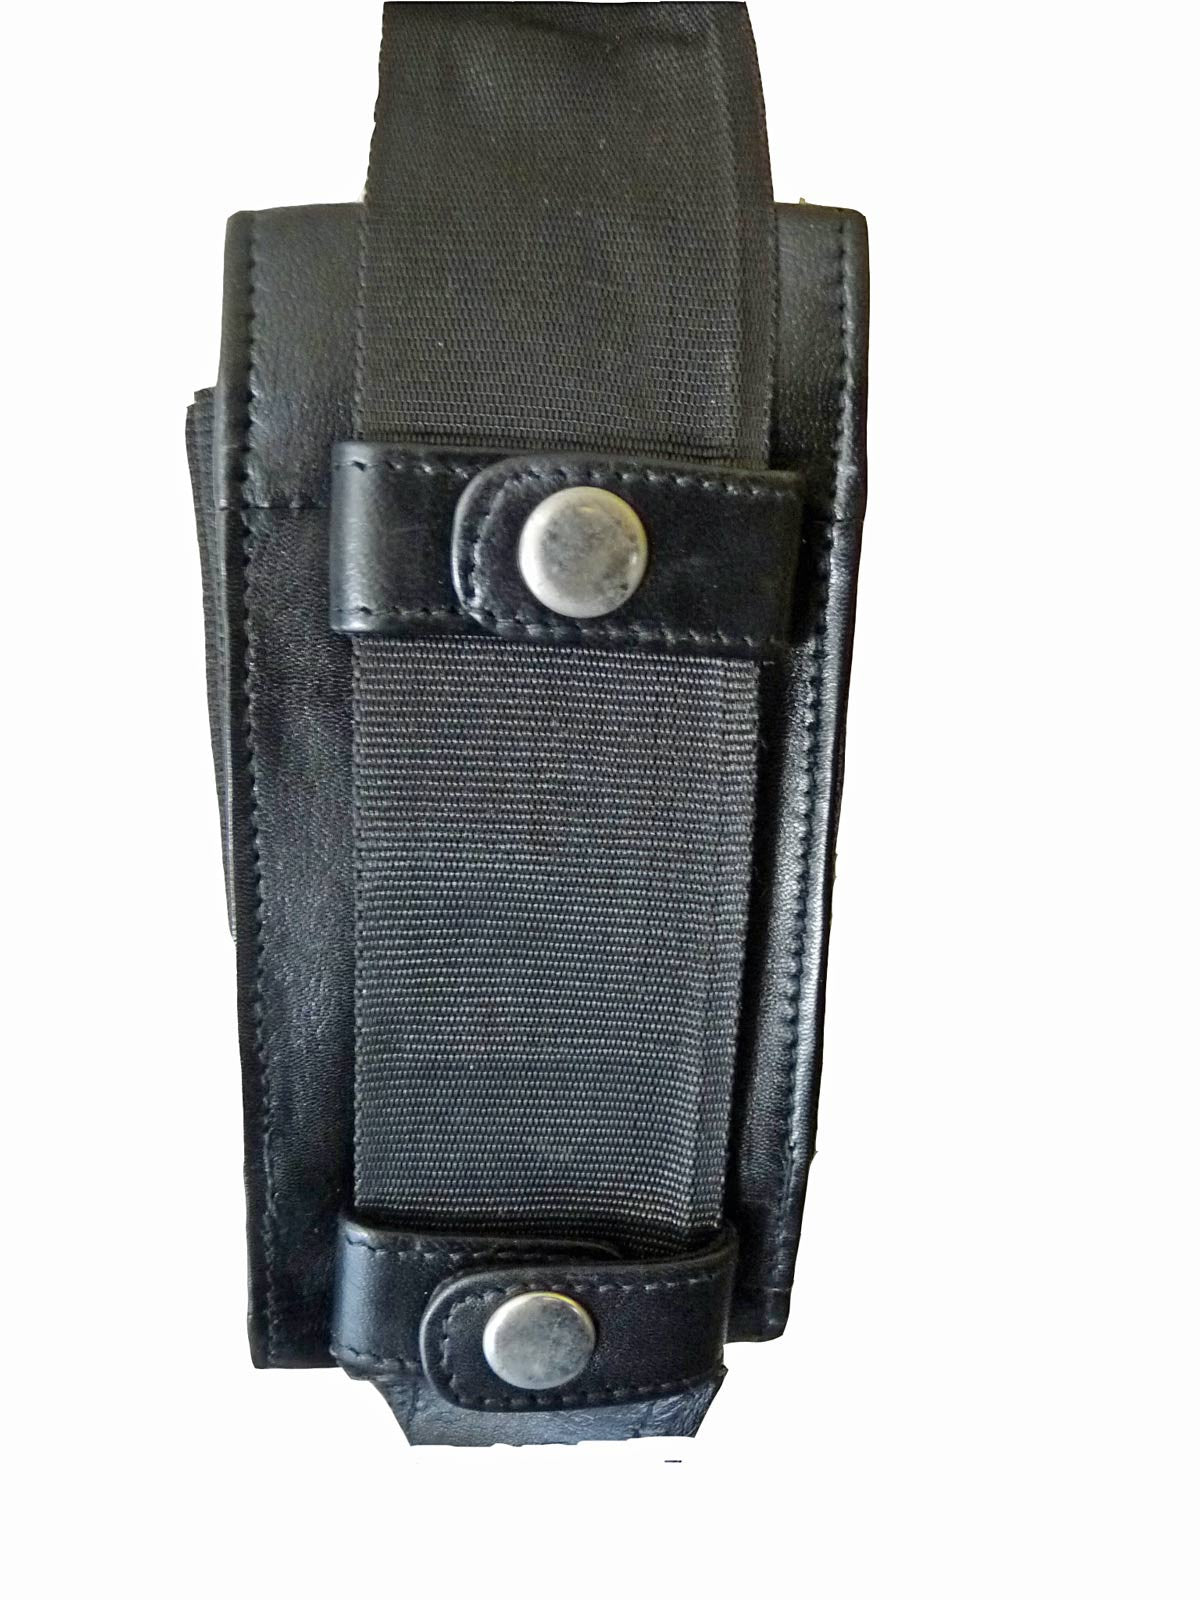 Shoulder Under Arm Holster Travel Bag Black RL705 POCKET VIEW 2